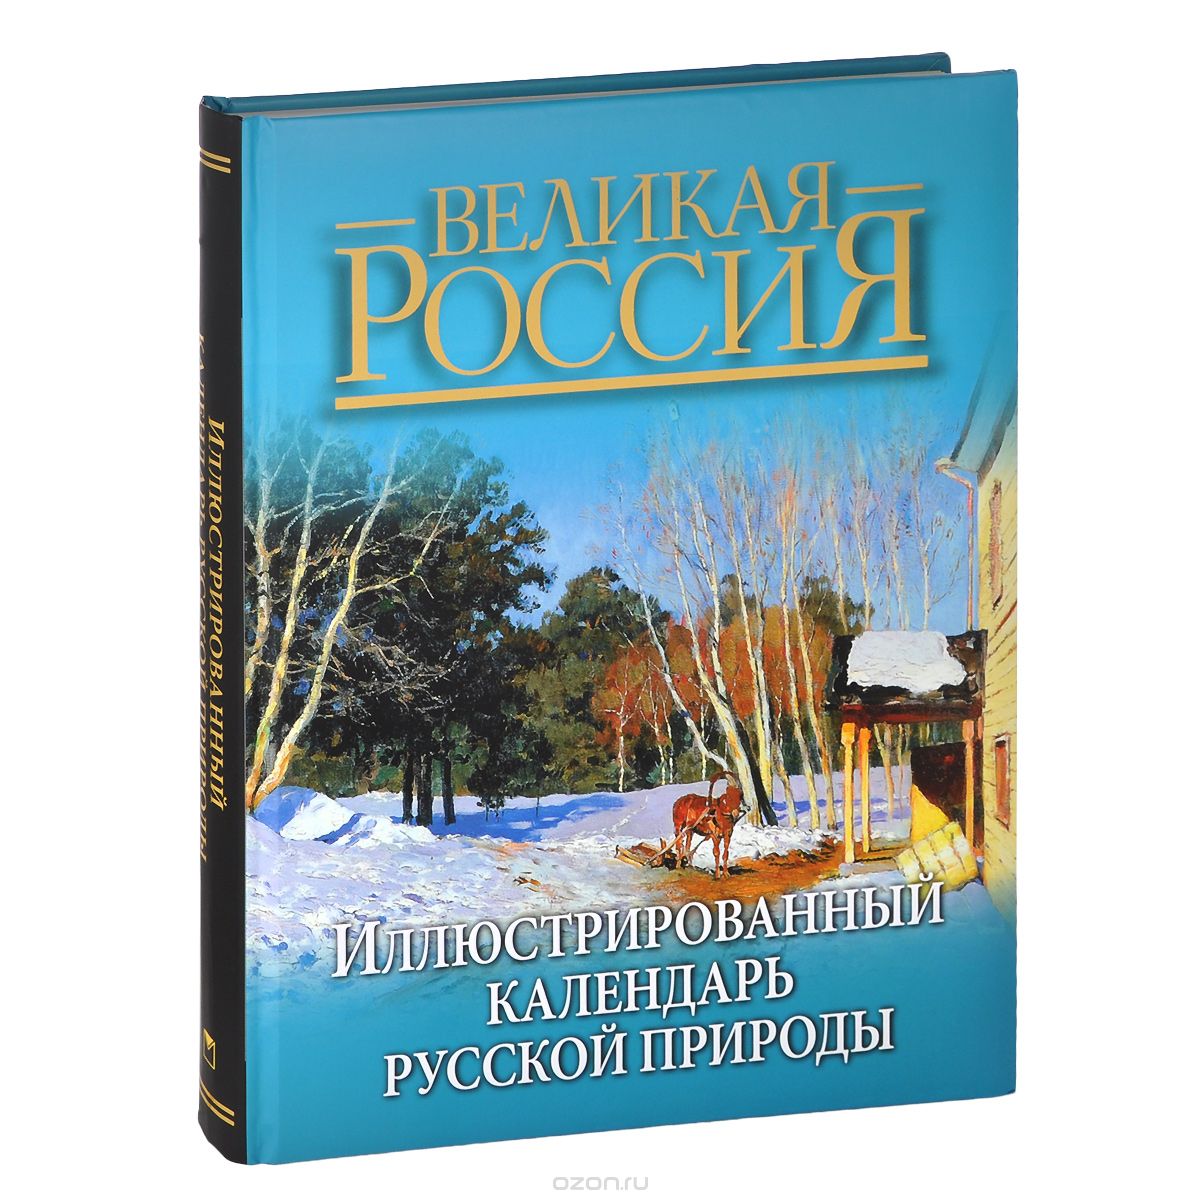 Скачать книгу "Иллюстрированный календарь русской природы"